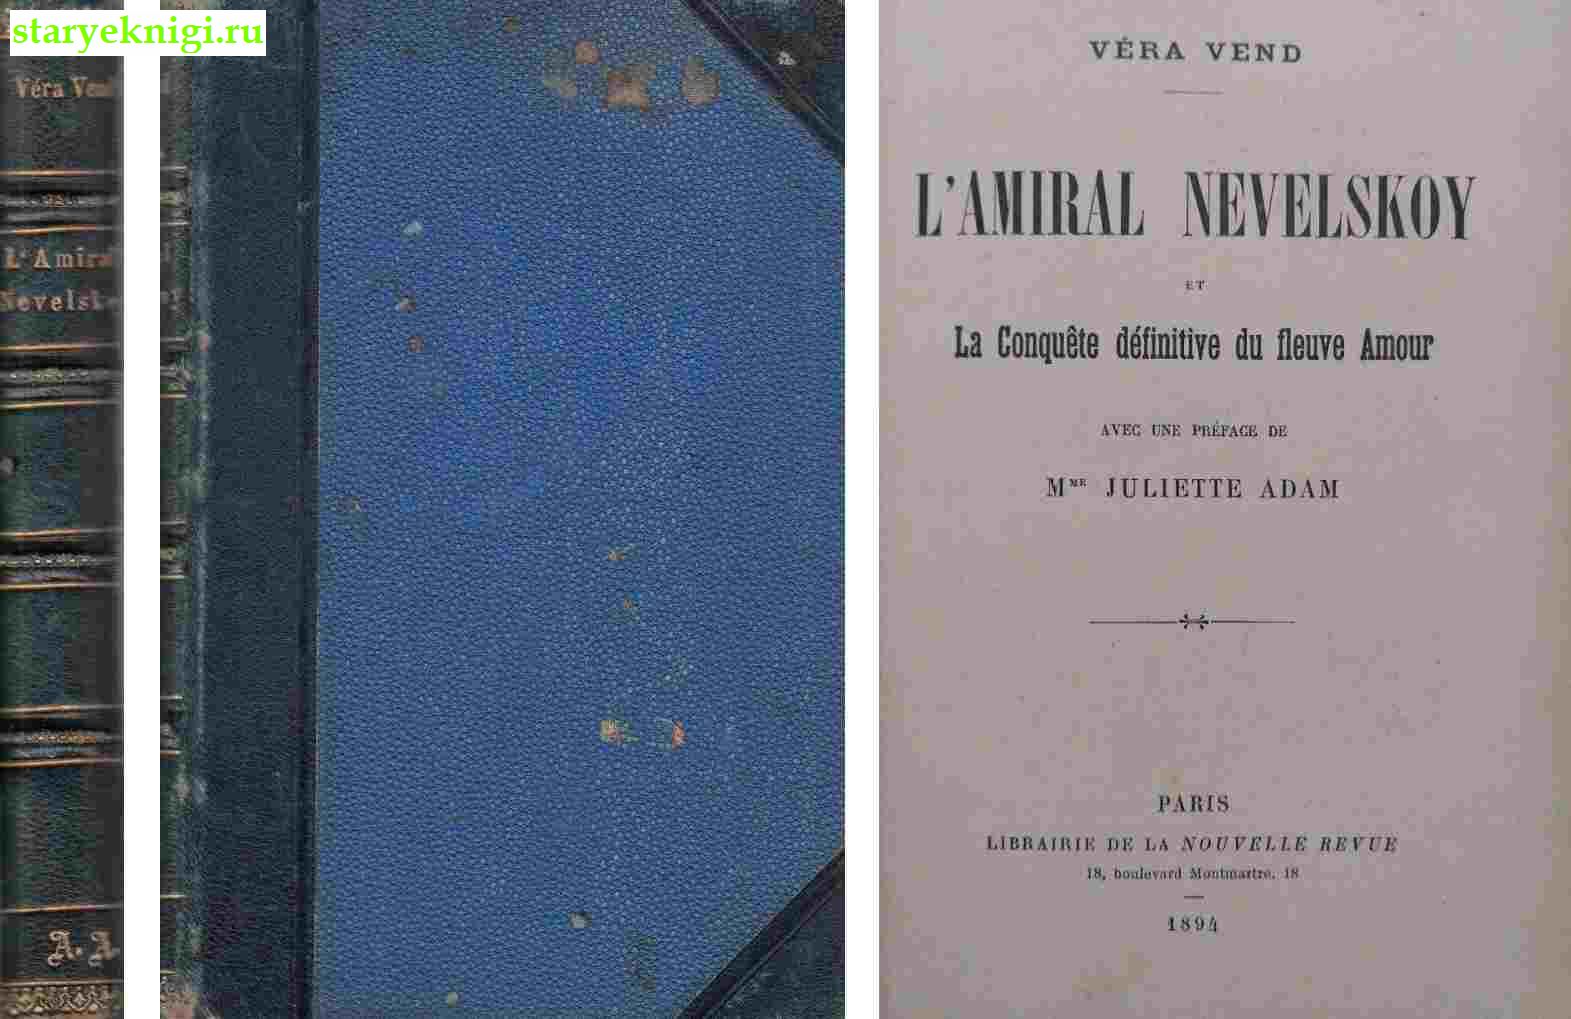 L'amiral Nevelskoy et la conquete definitive du fleuve Amour.  ., Vend V., 